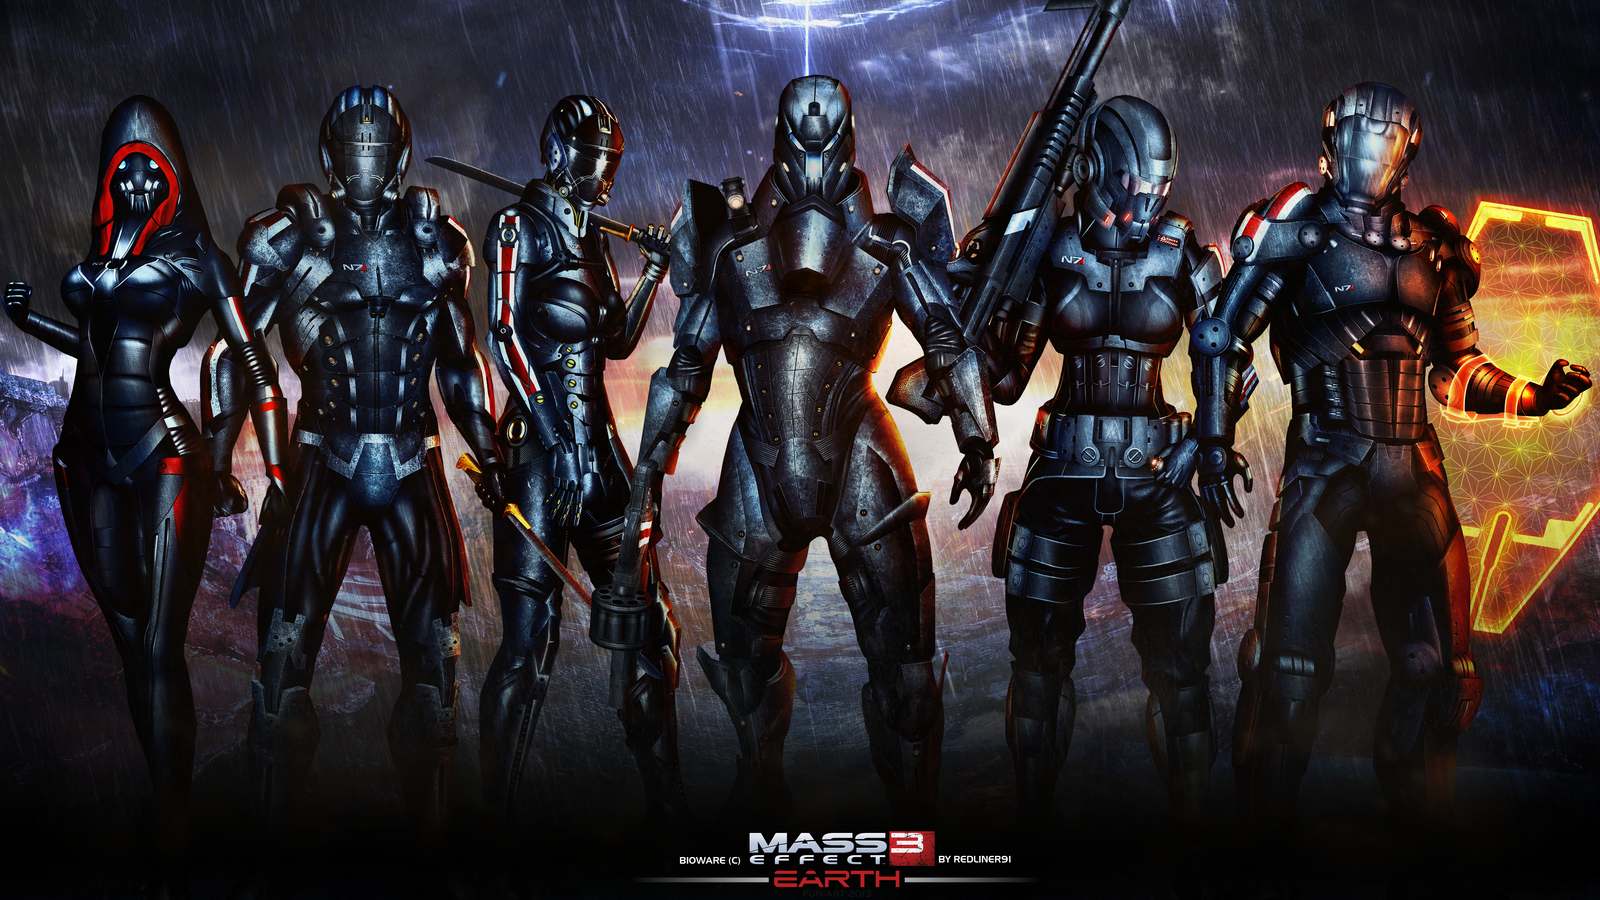 Mass Effect wallpaper | 1600x900 | #52529